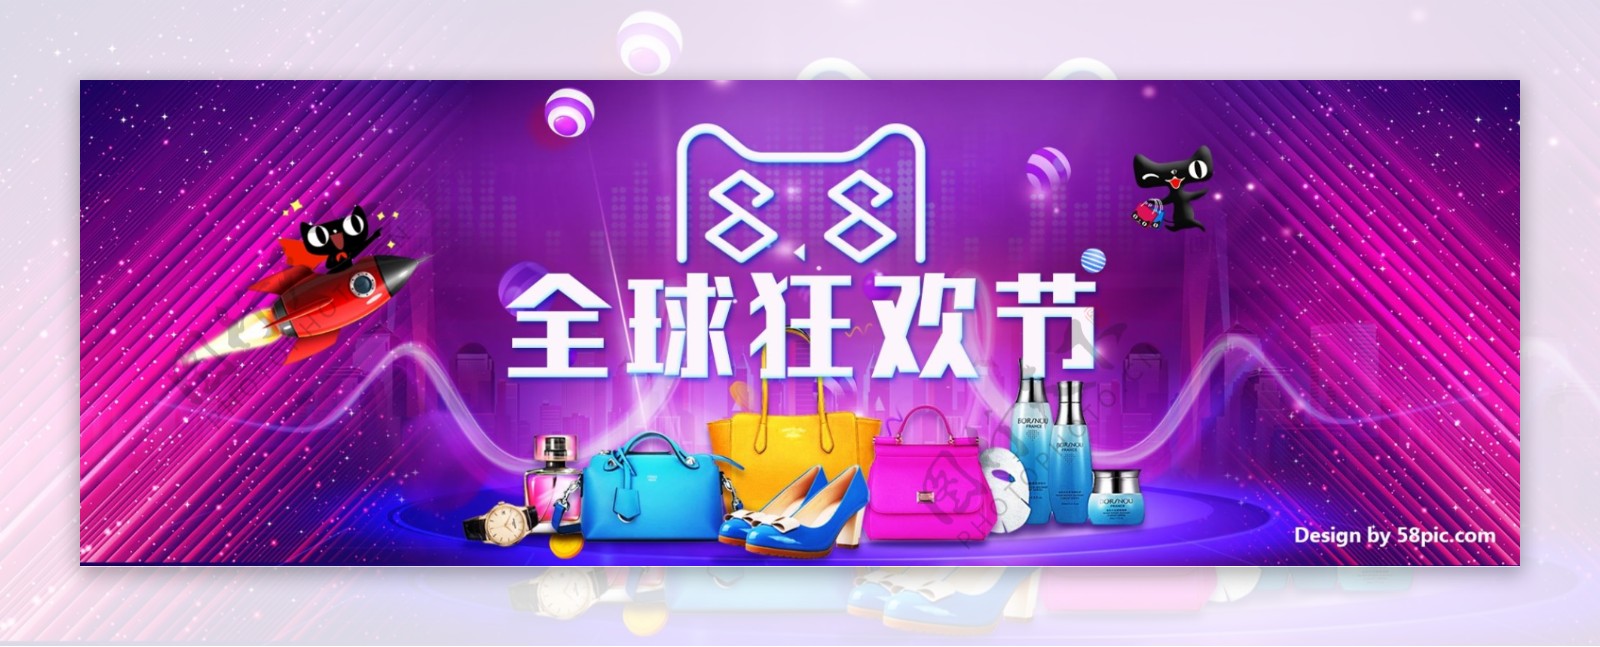 电商淘宝天猫88全球狂欢节大促海报